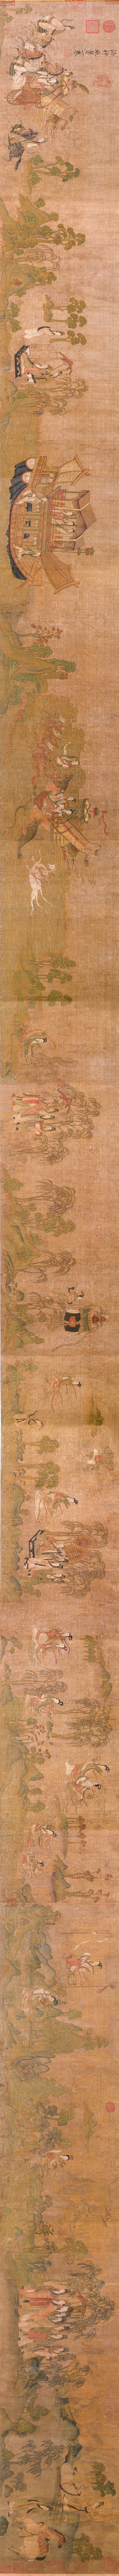 顾恺之洛神赋图卷（宋摹） 拷贝-Wikimedia Commons.jpg